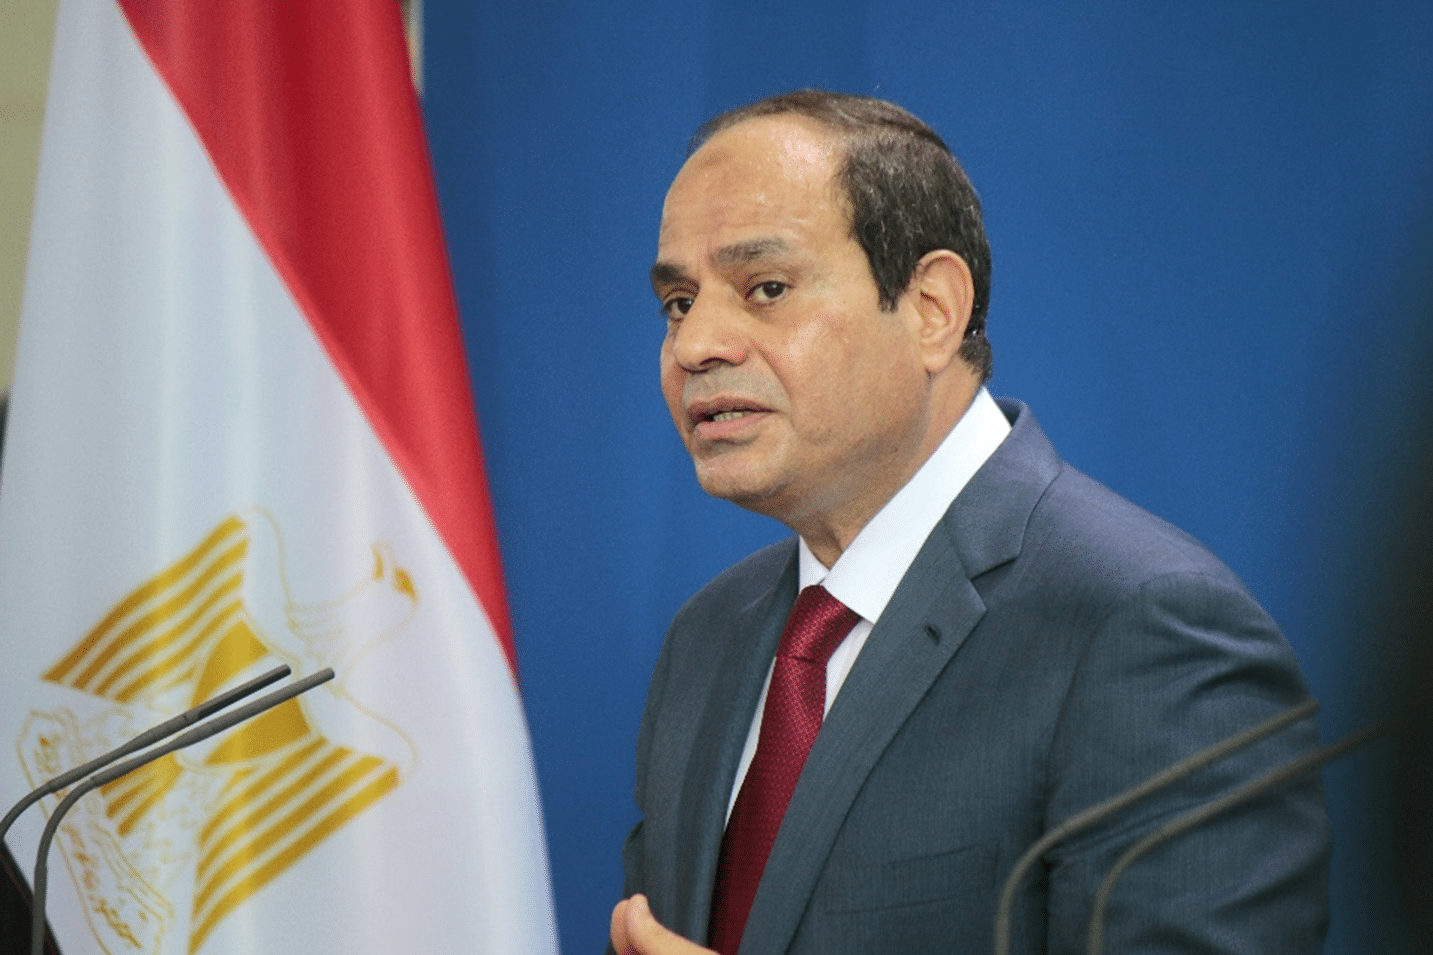 Egyptian President Abd Al-Fatah Al-Sisi | Photo: Shutterstock.com